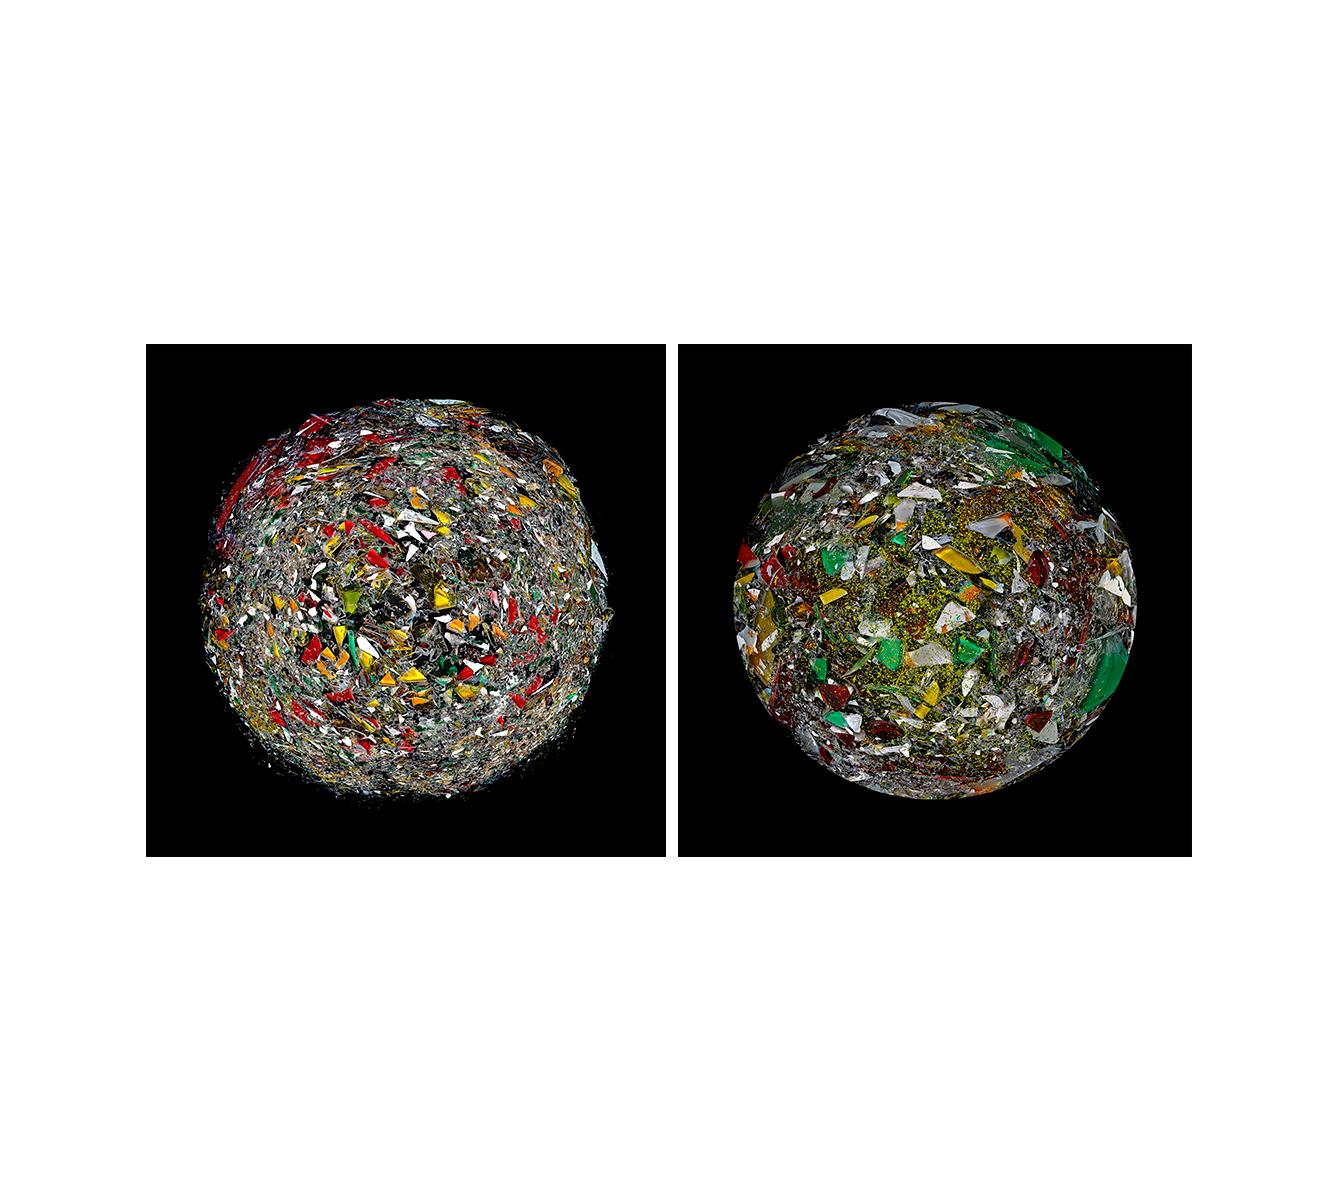 Color Photograph Zoltan Gerliczki - La Planète brisée et la Planète d'excitation. Photographie numérique à collage de couleur